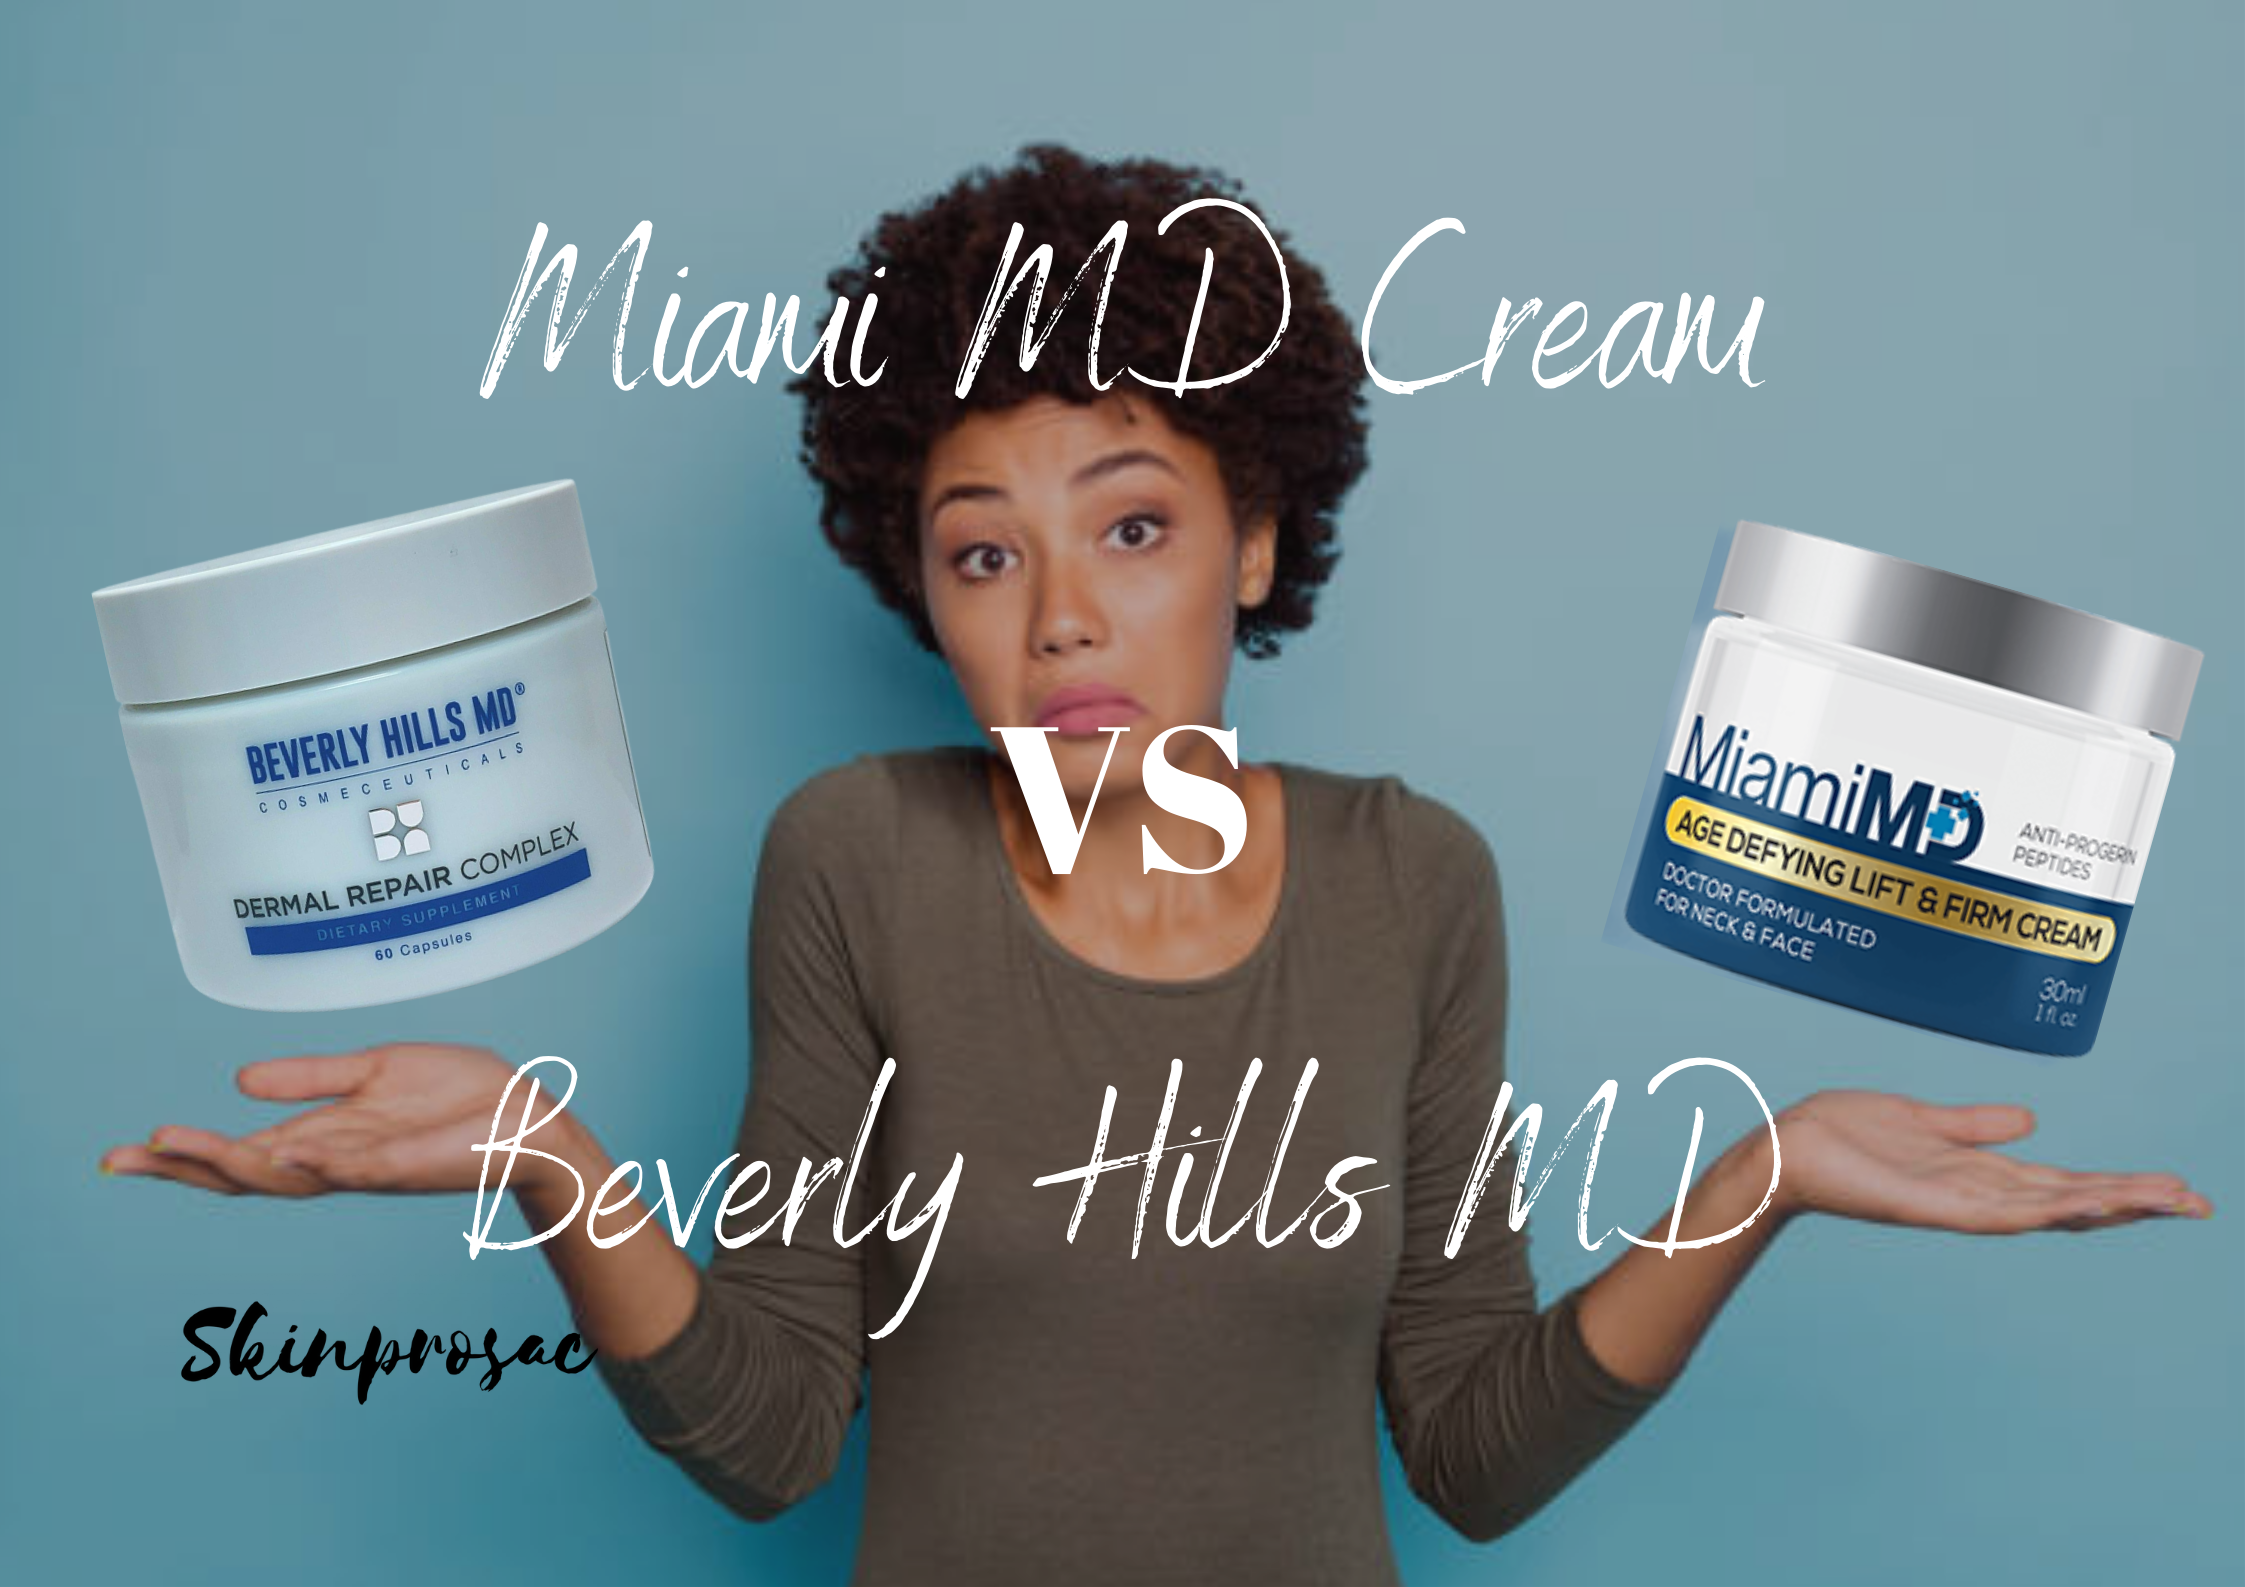 Miami MD Cream Vs Beverly Hills MD